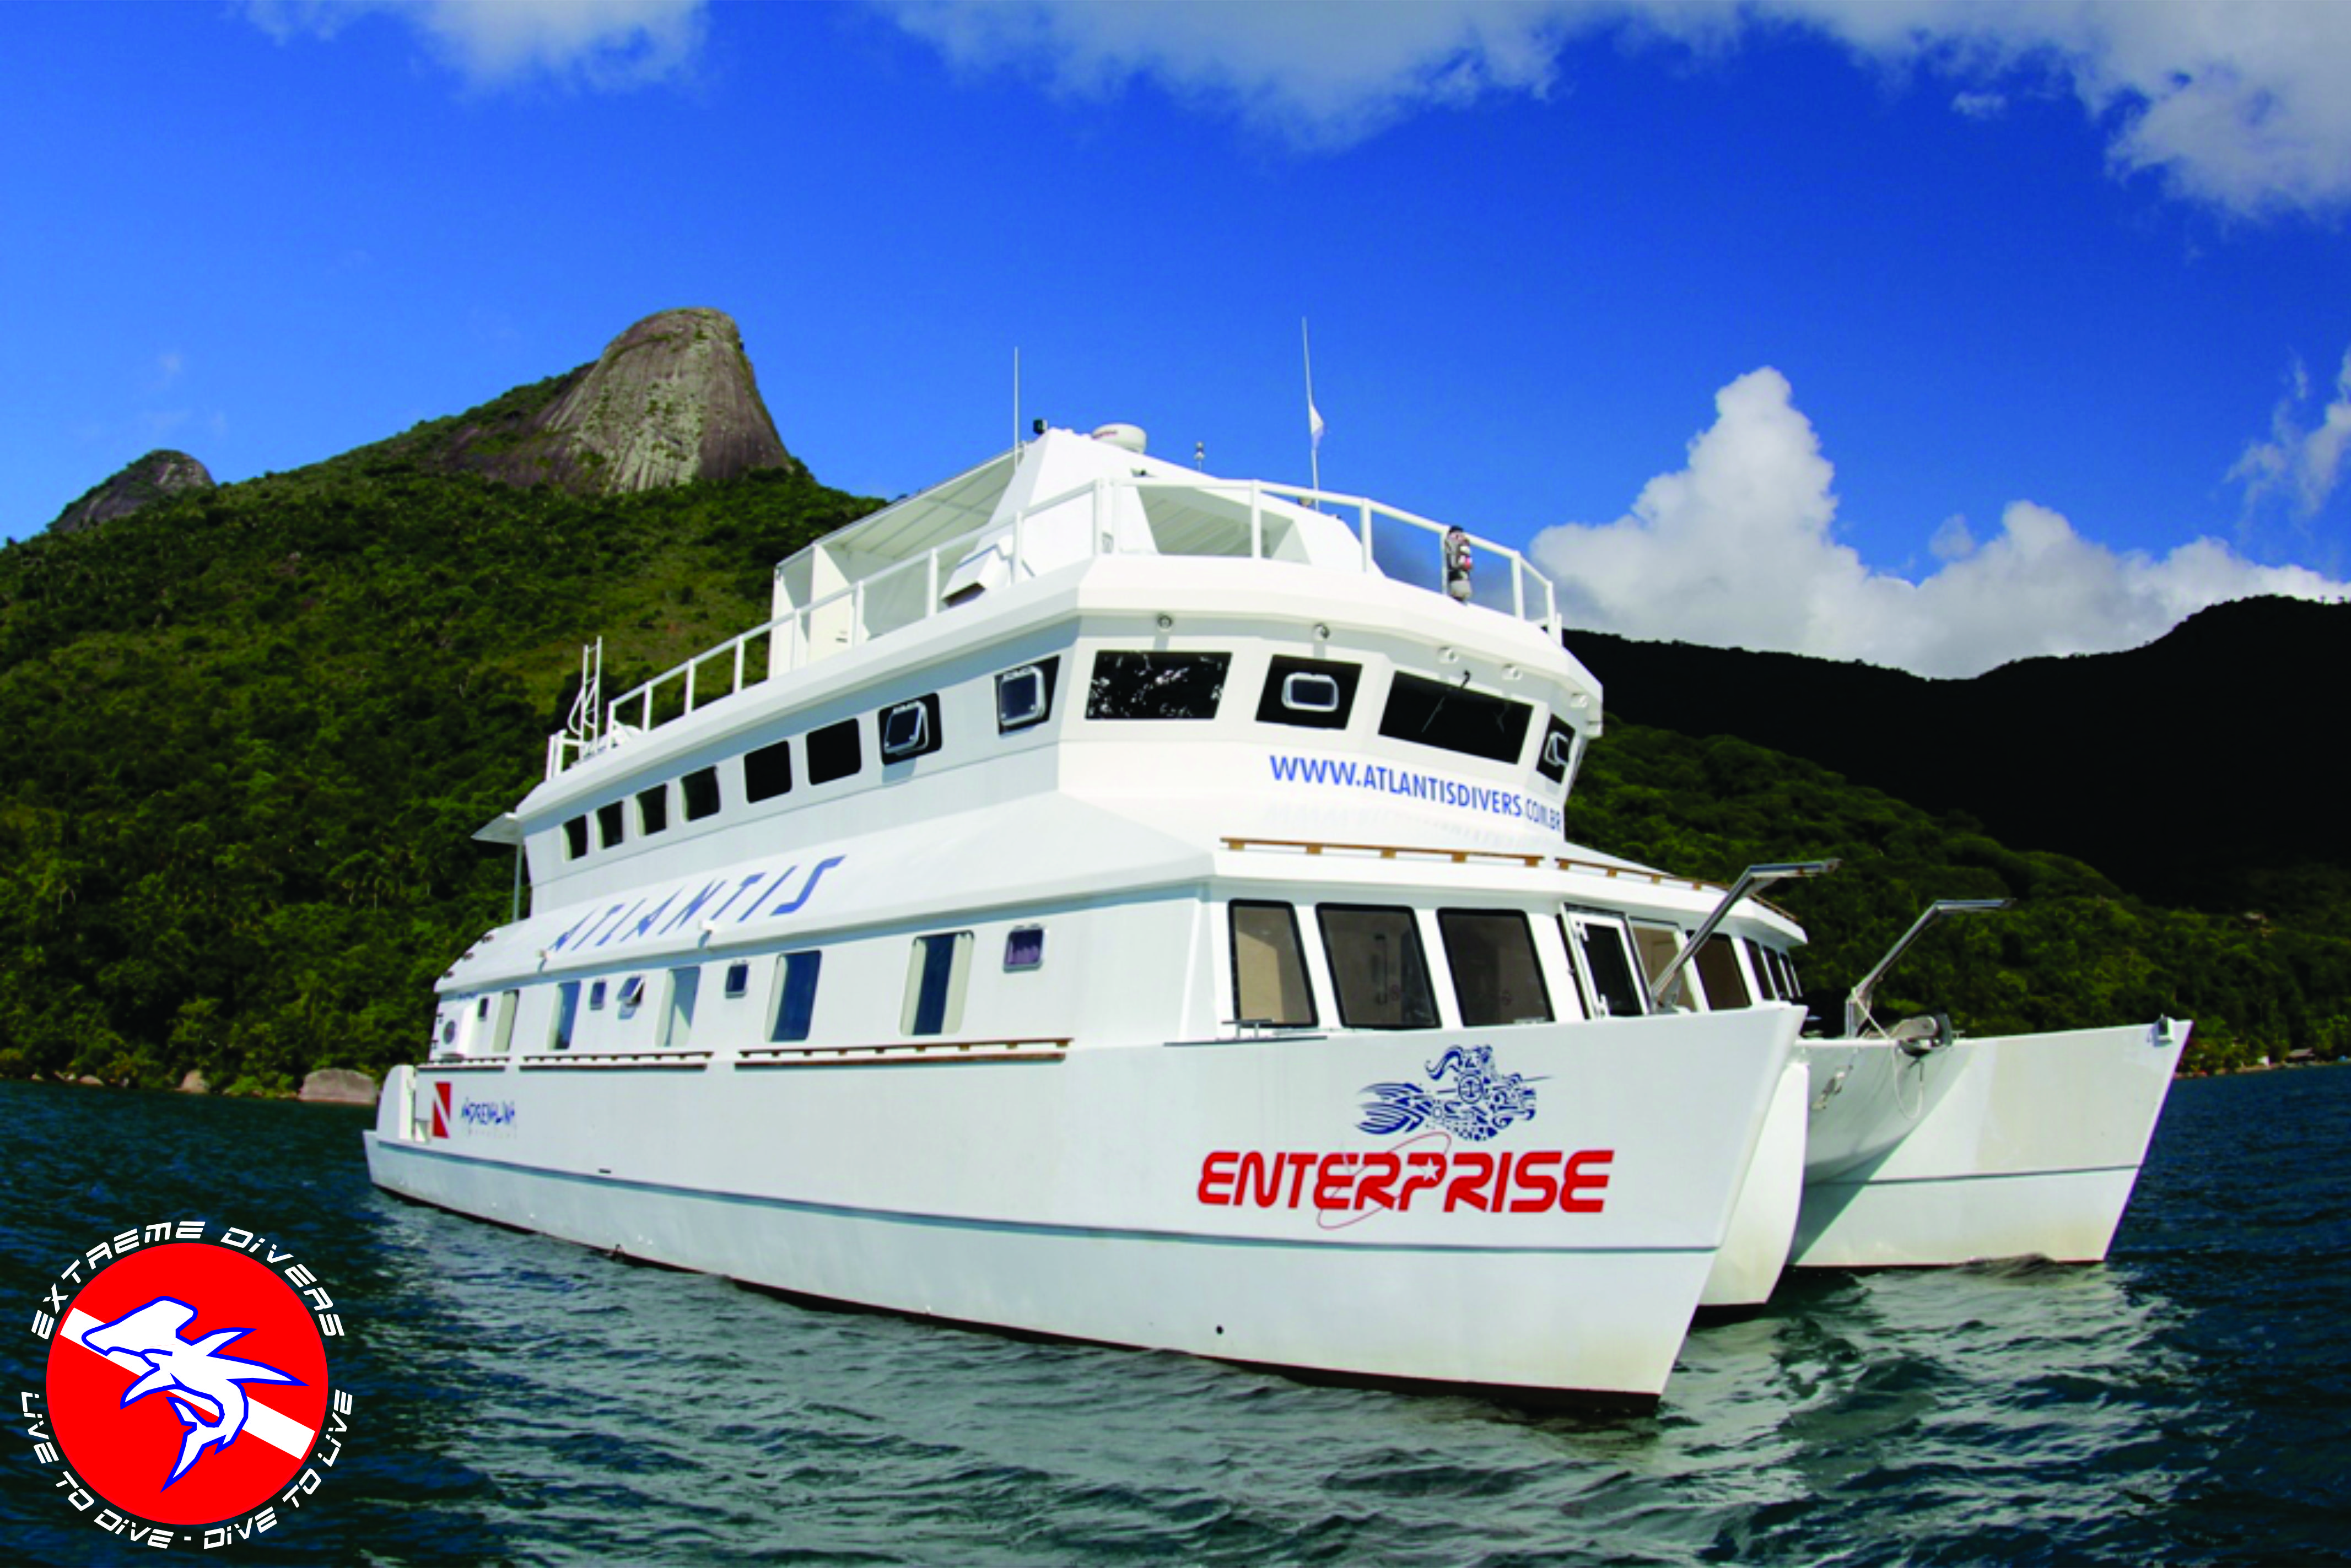 Live Aboard Enterprise XXXV – Reserva Exclusiva parcelado em até 8x – 28 e 29 de Janeiro de 2017  – Até 8 Mergulhos!!!